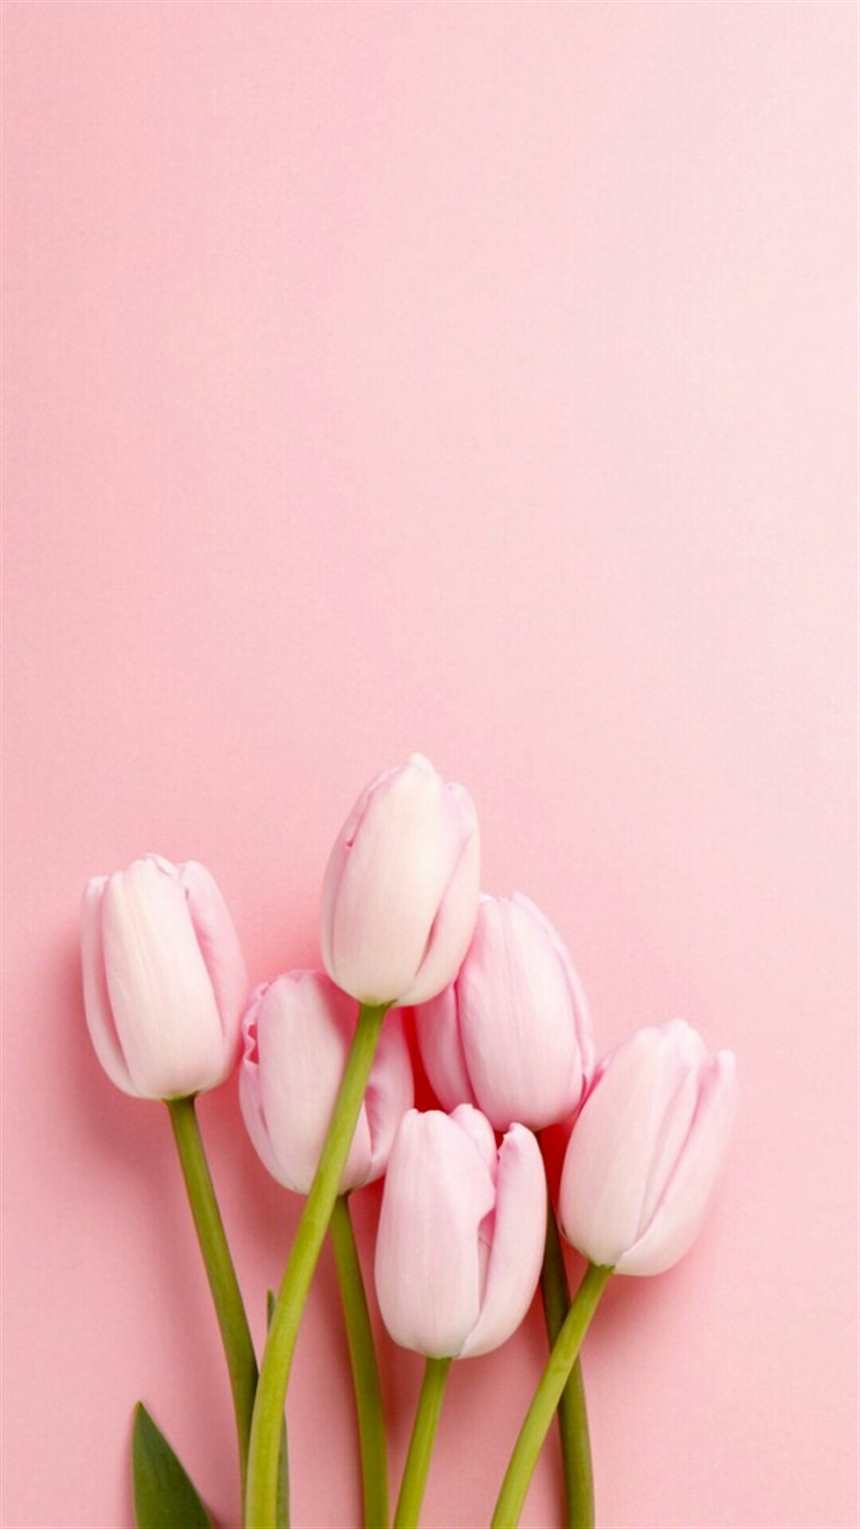 祝大家周末愉快玩的开心,每天有个好心情!#花草#粉色